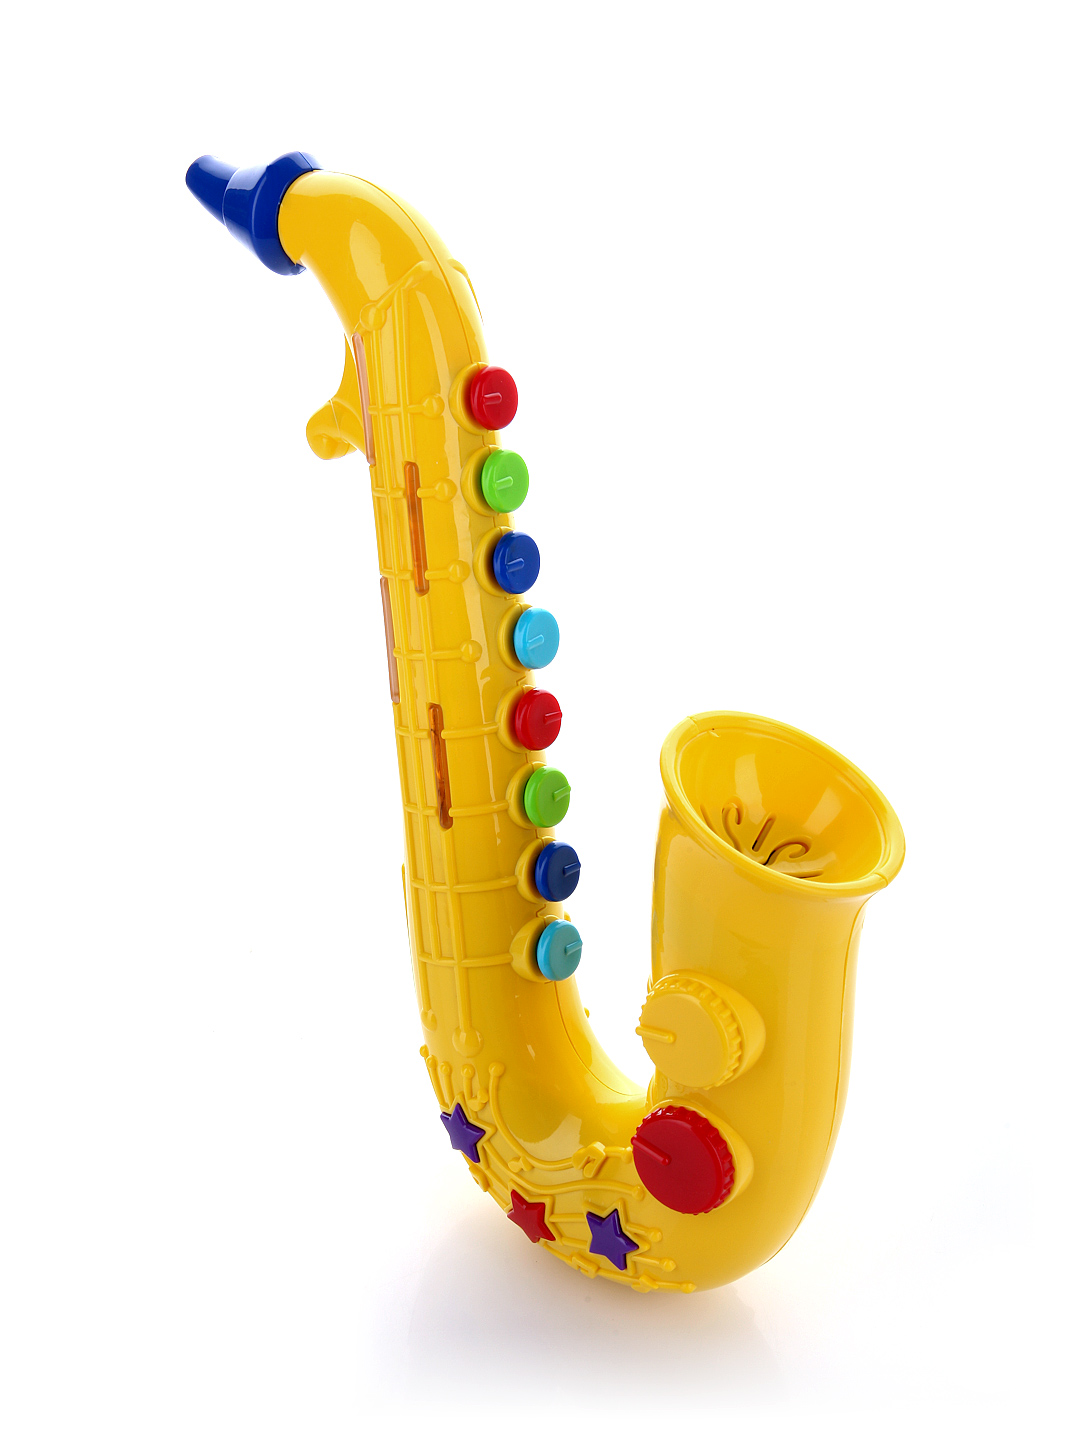 Зеленый саксофон. Tender Toys 1030ae Amsterdam игрушки саксофон. Саксофон наша игрушка 800284. Детский саксофон игрушка. Саксофон игрушечный музыкальный.